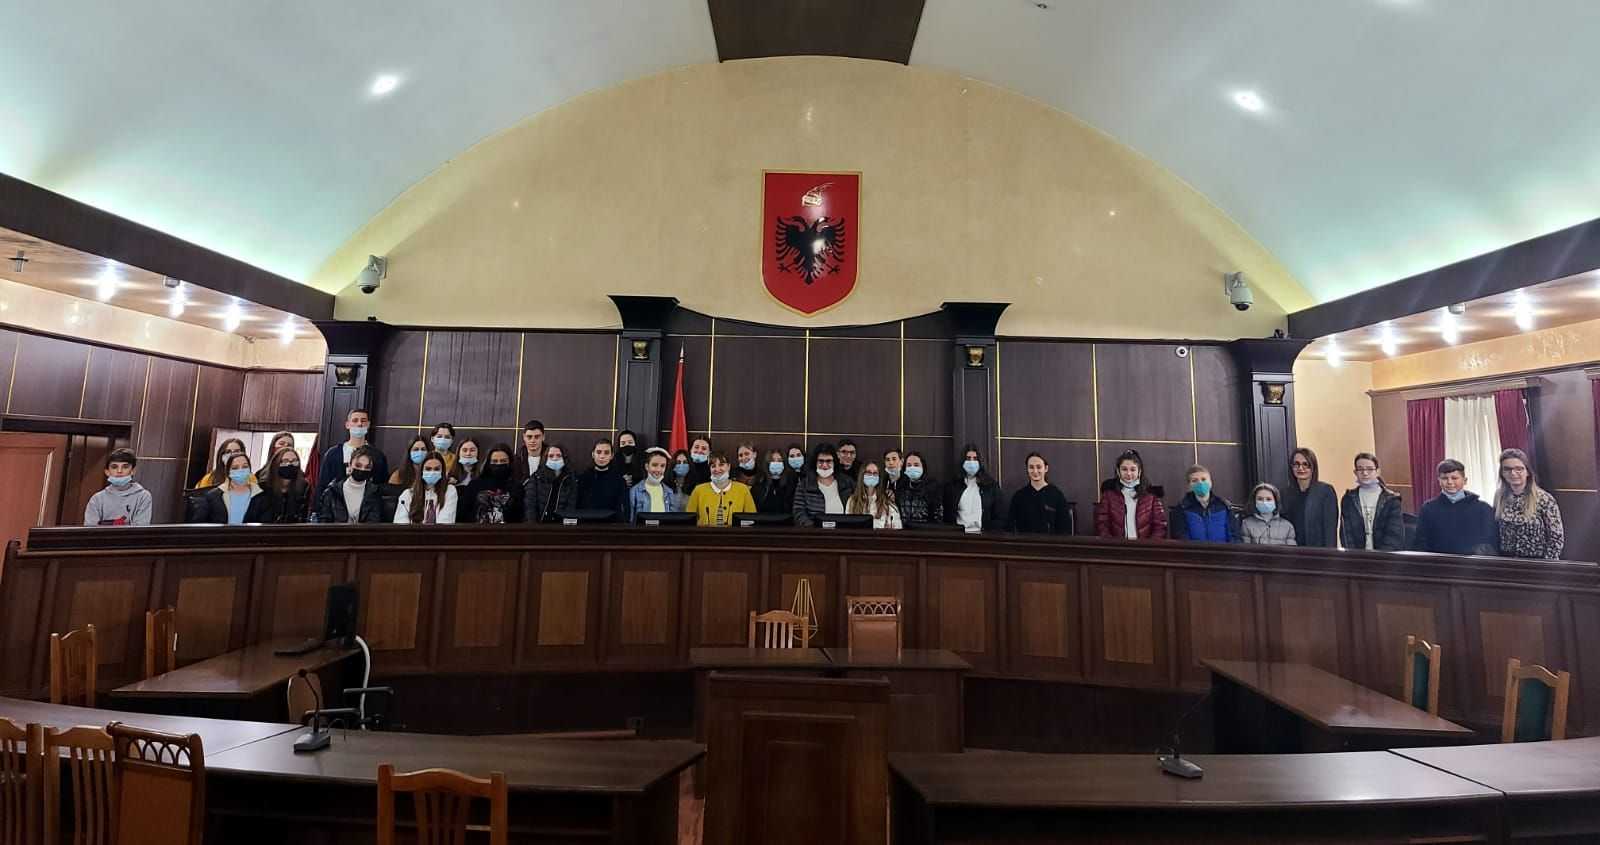 Një grup nxënësish të shkollës 9 vjeçare Jeronim de Rada në Tiranë, vizituan Gjykatën e Lartë të Republikës së Shqipërisë